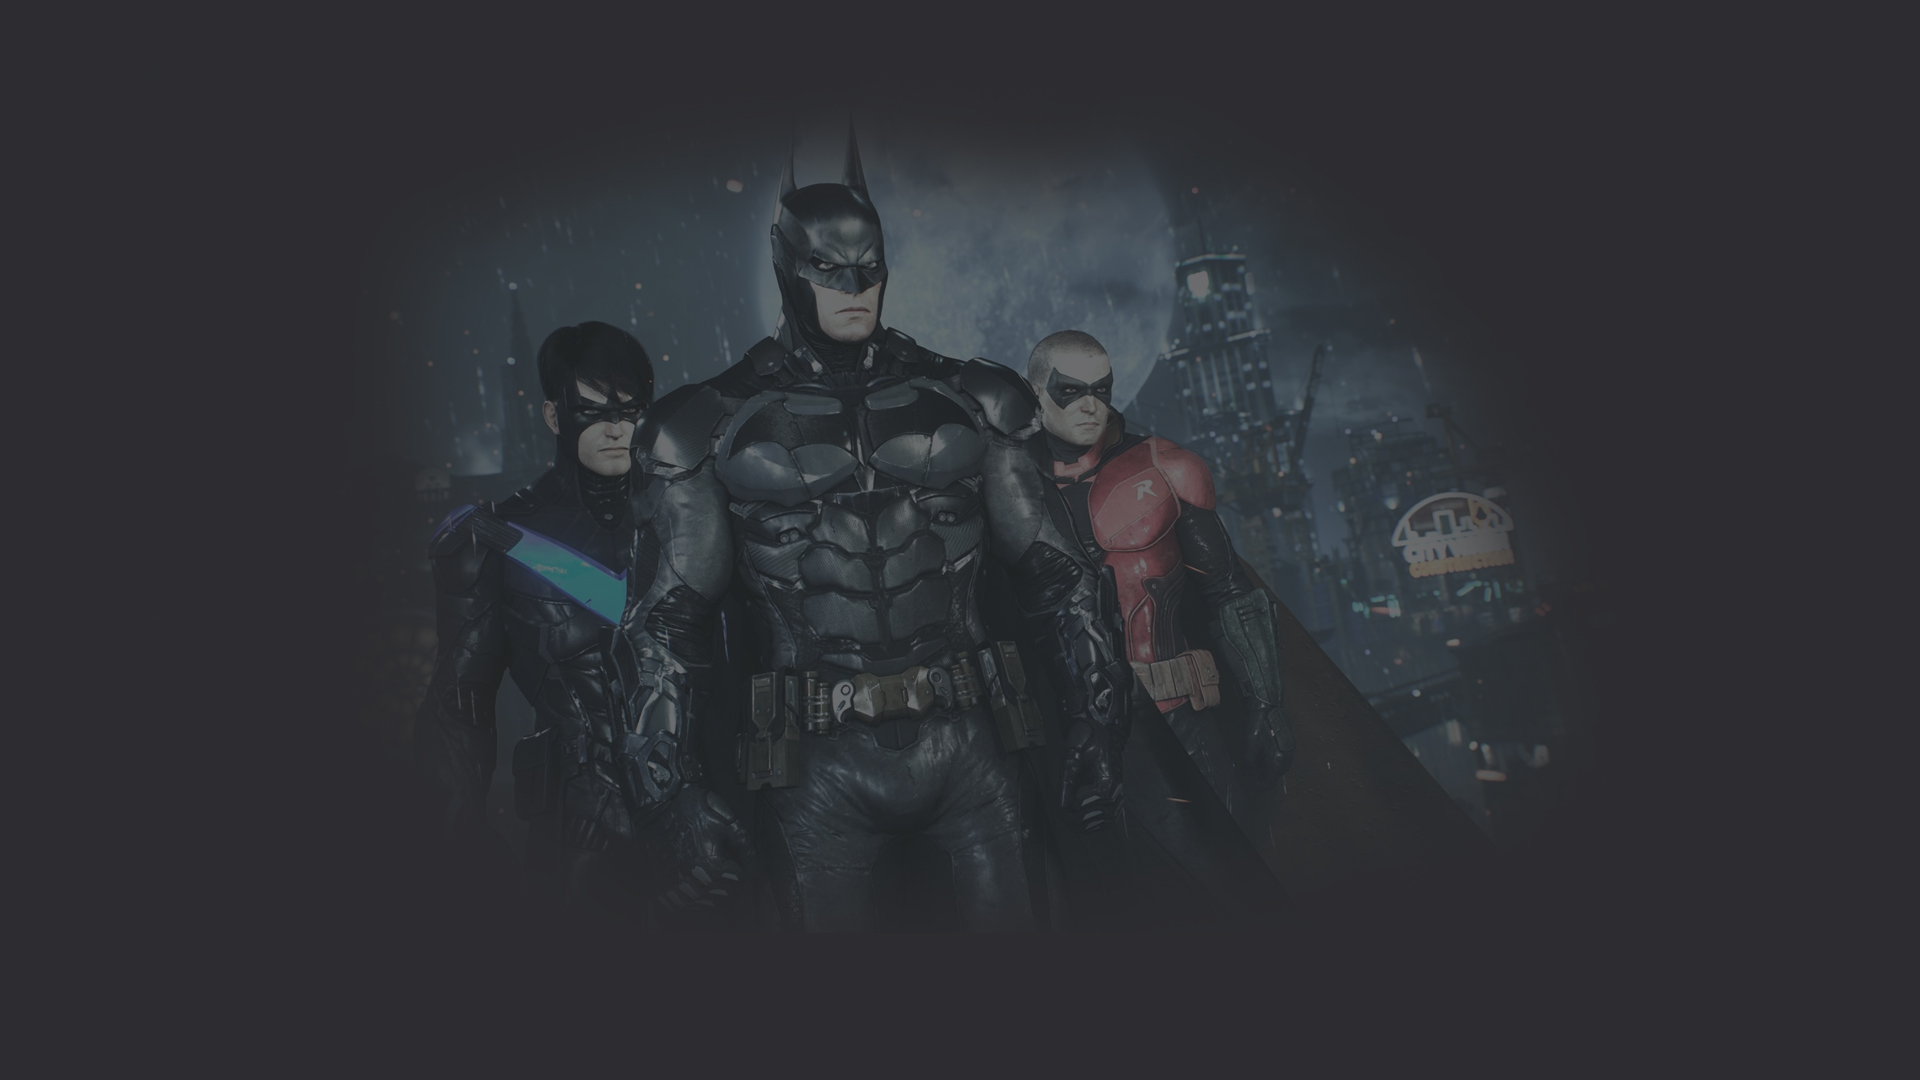 Скачать обои бесплатно Видеоигры, Бэтмен, Найтвинг, Робин (Комиксы Dc), Дик Грейсон, Тим Дрейк, Batman: Рыцарь Аркхема картинка на рабочий стол ПК